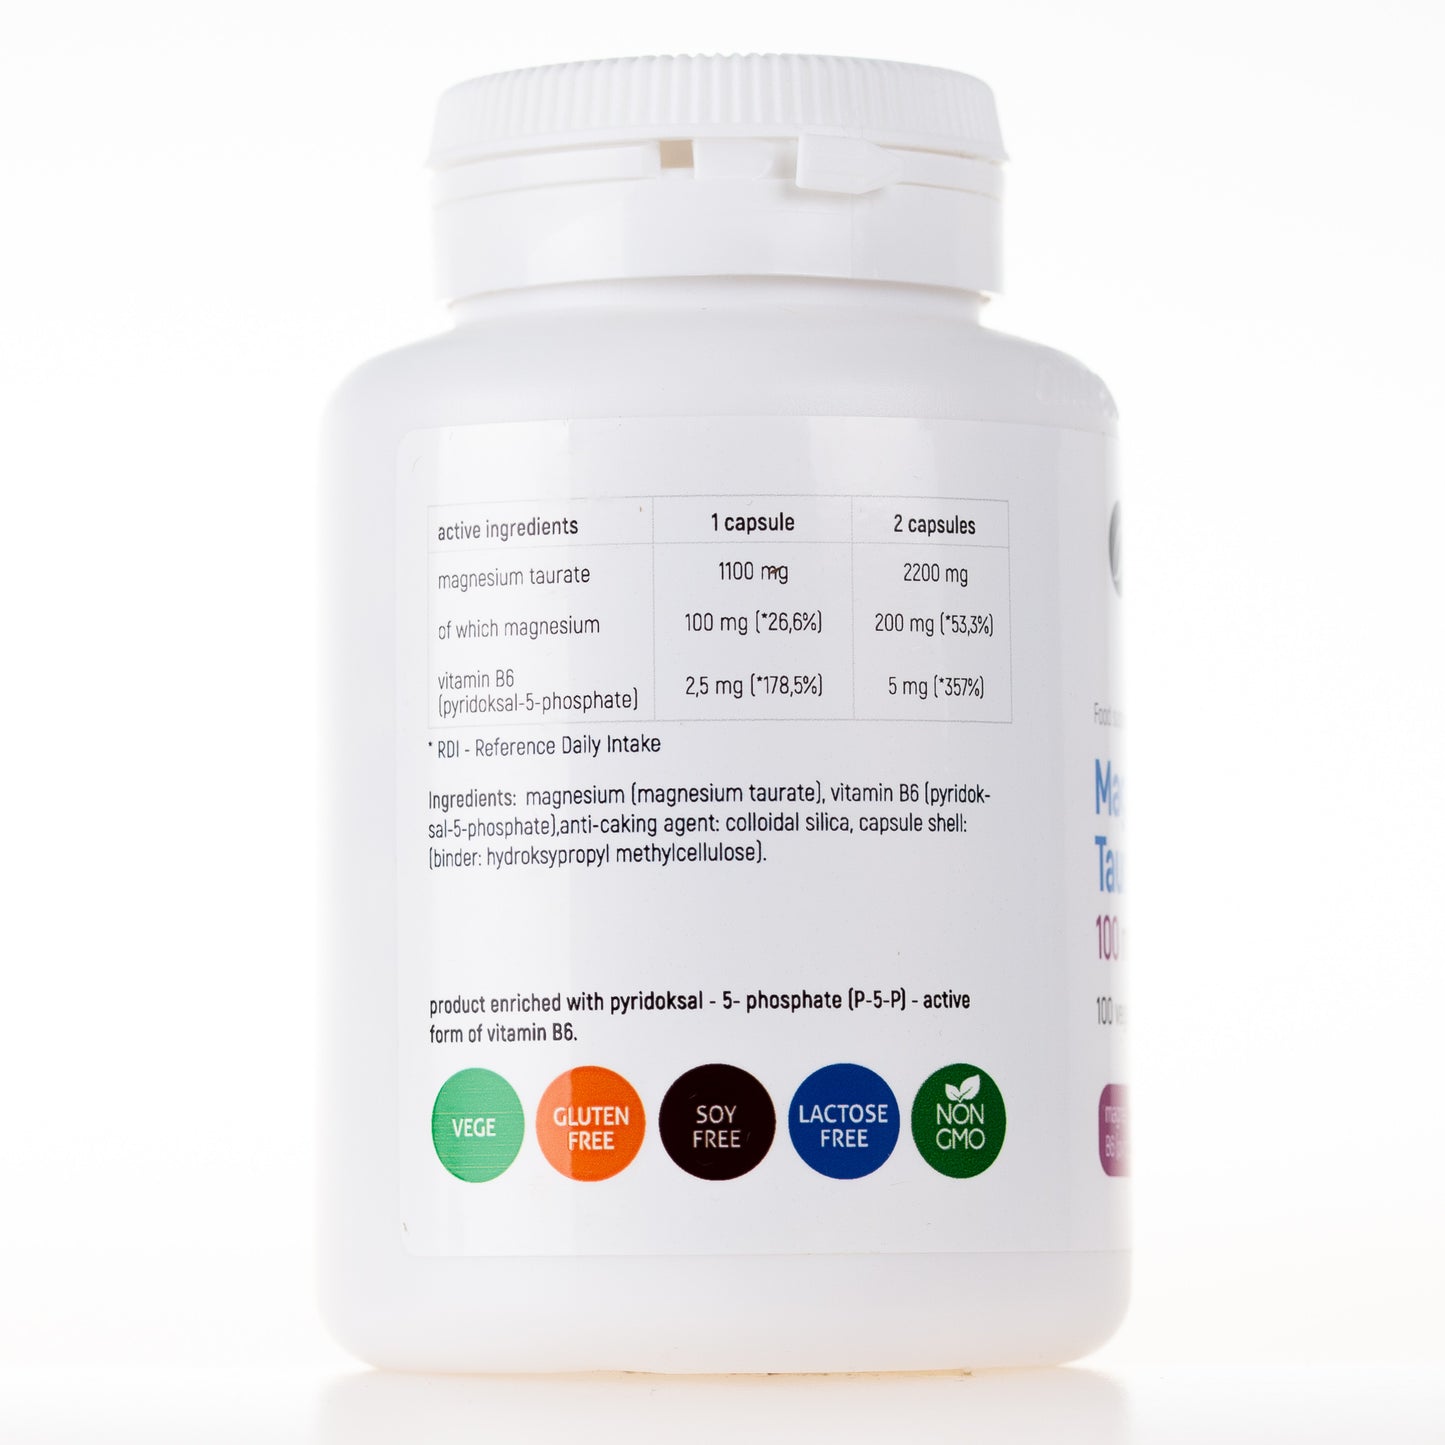 Magnesium Taurate with Vitamin B6 (P-5-P), 100 vegan capsules